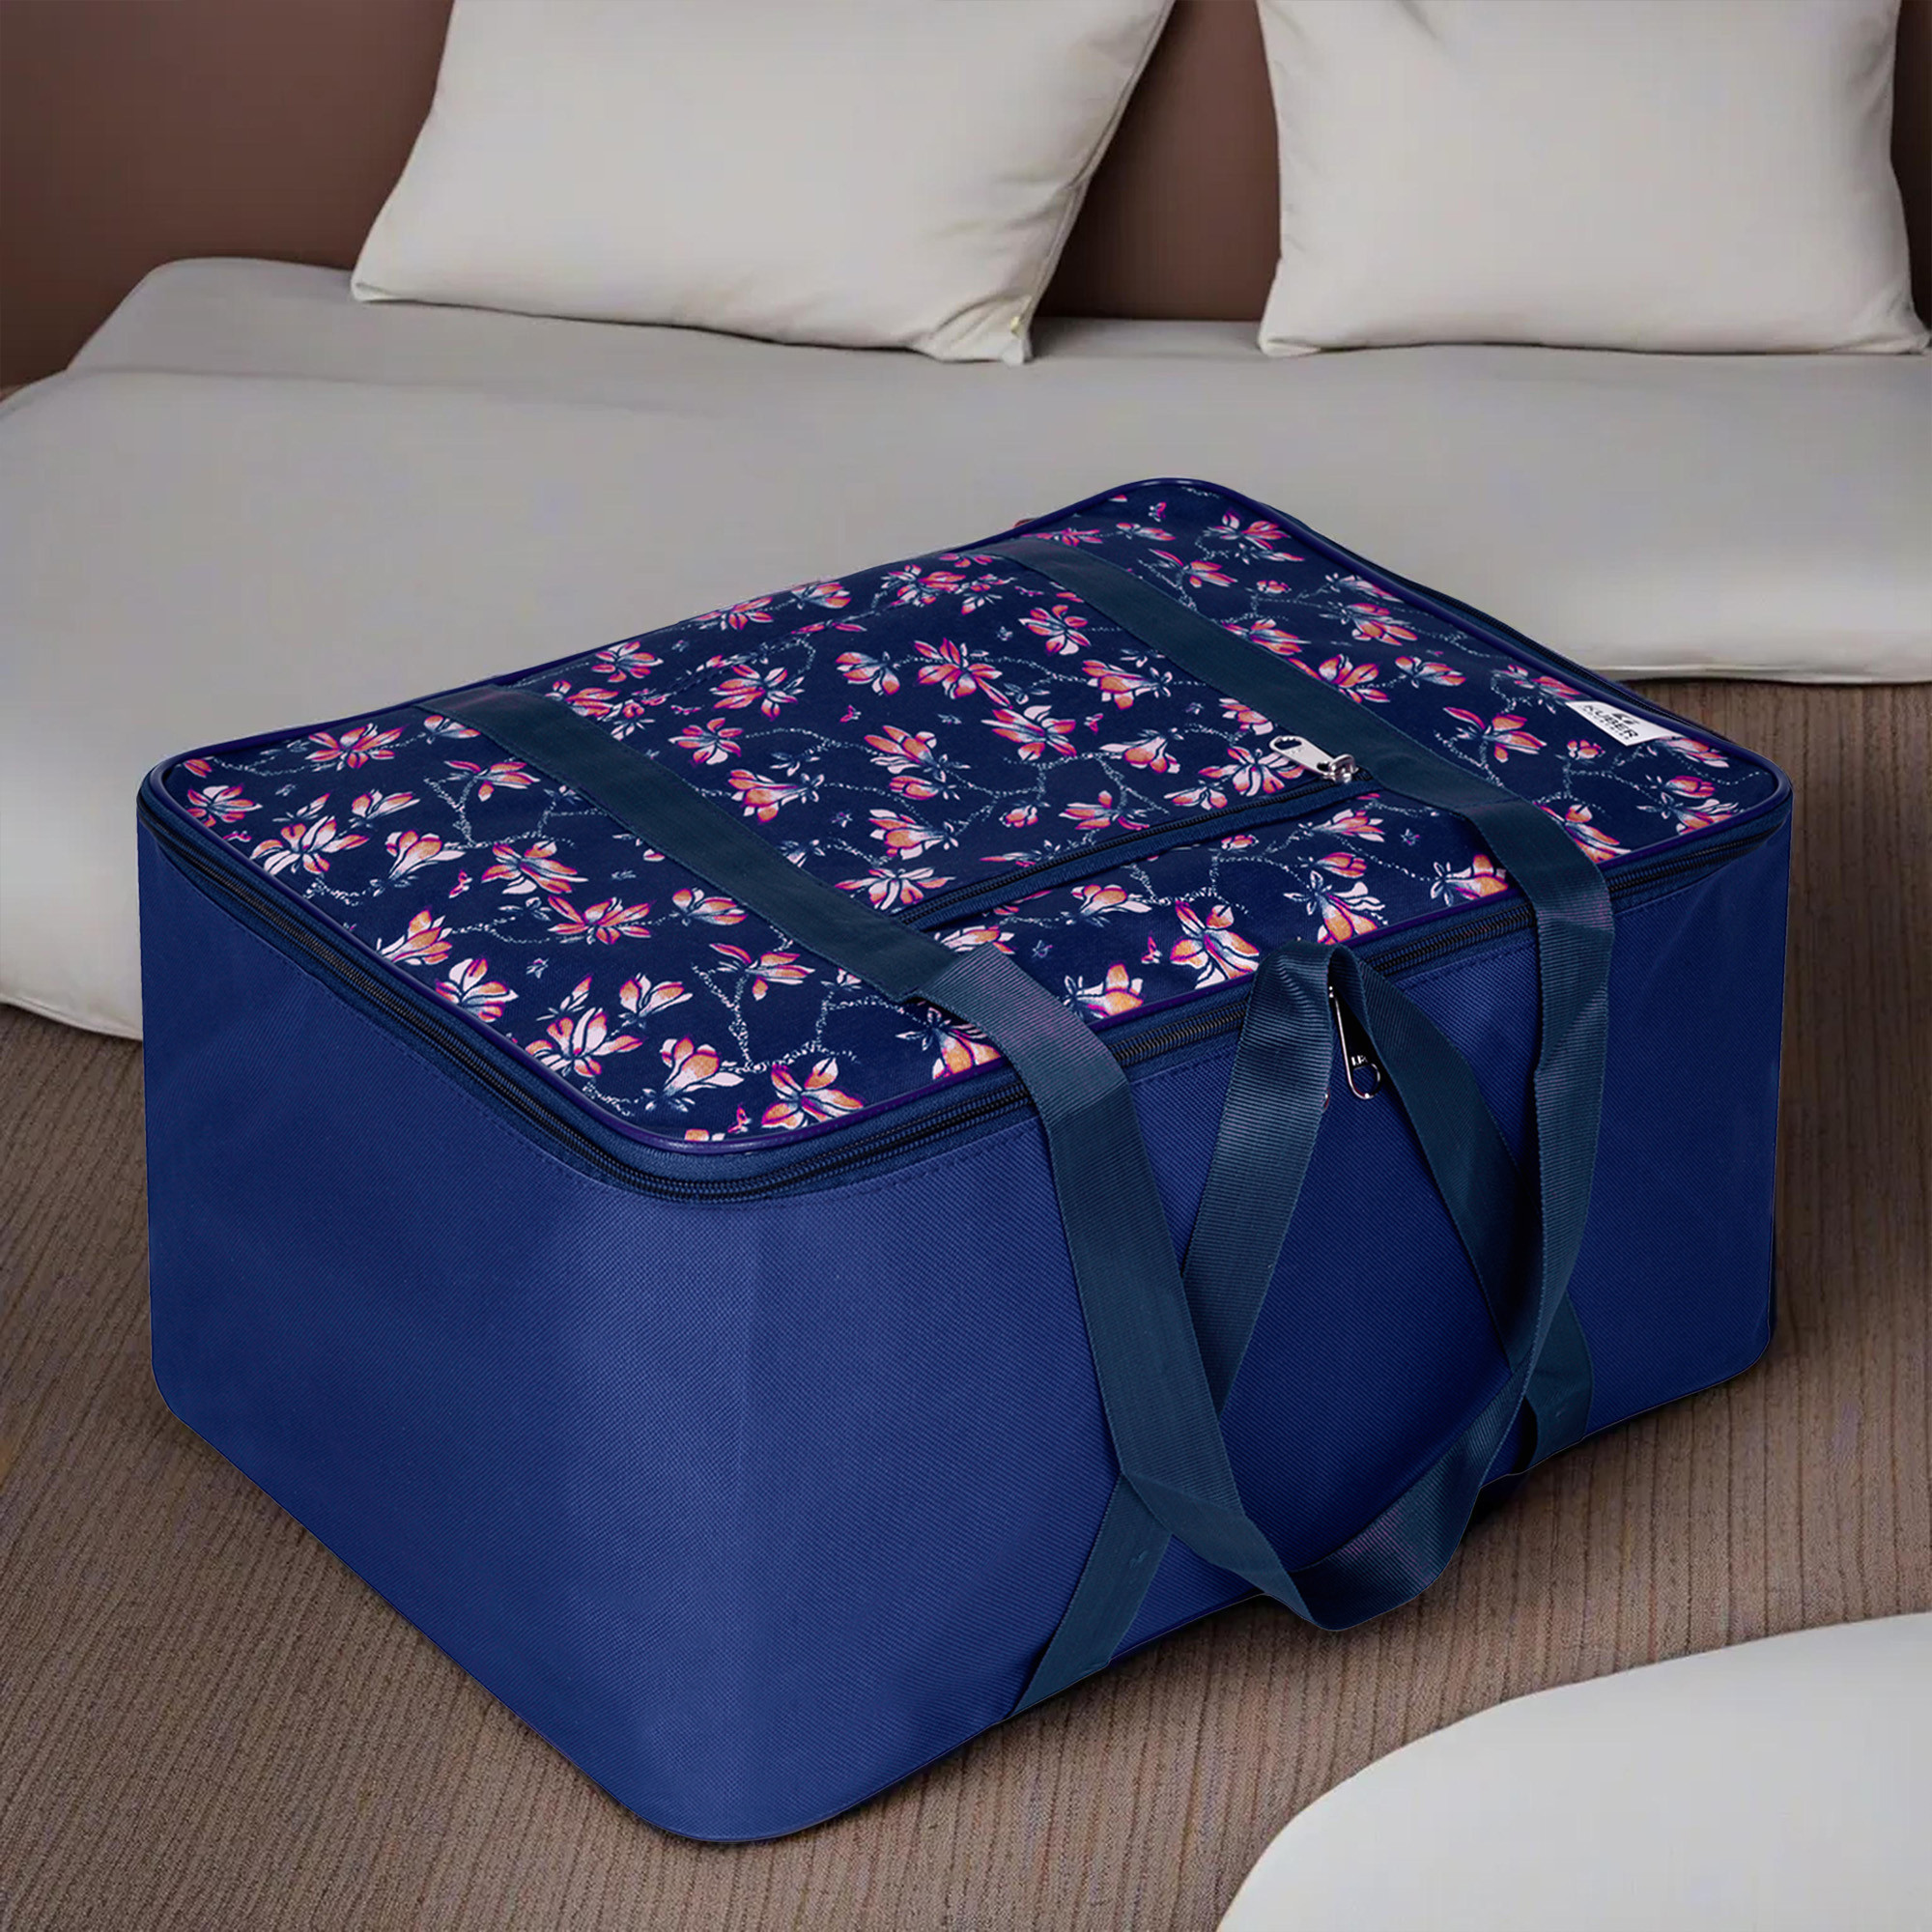 Kuber Industries Storage Bag | Clothes Storage Attachi Bag | Underbed Storage Bag | Zipper Storage Bag | Wardrobe Organizer with Handle | Travel Attachi Bag | Flower-Print | Small | Navy Blue